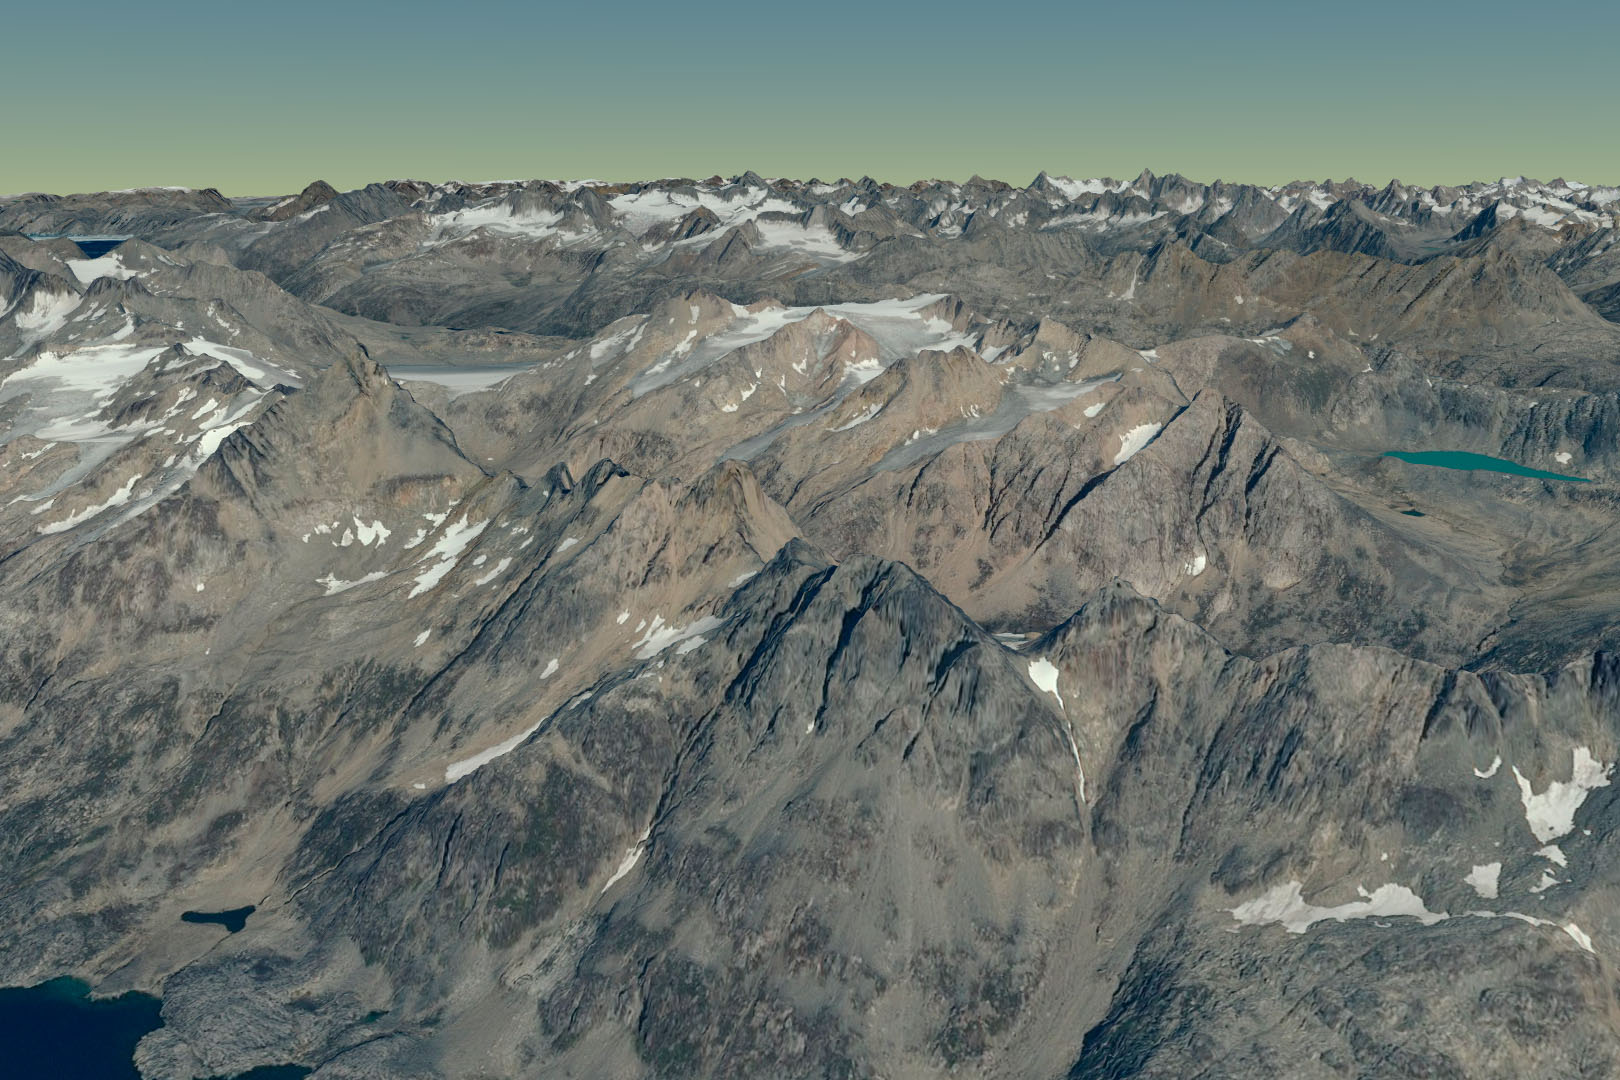 Også luftnavigationen bliver bedre med højdemålinger. Her et panoramabillede genereret ud fra satellitfoto og højdemodel. Foto: Styrelsen for Dataforsyning og Effektivisering